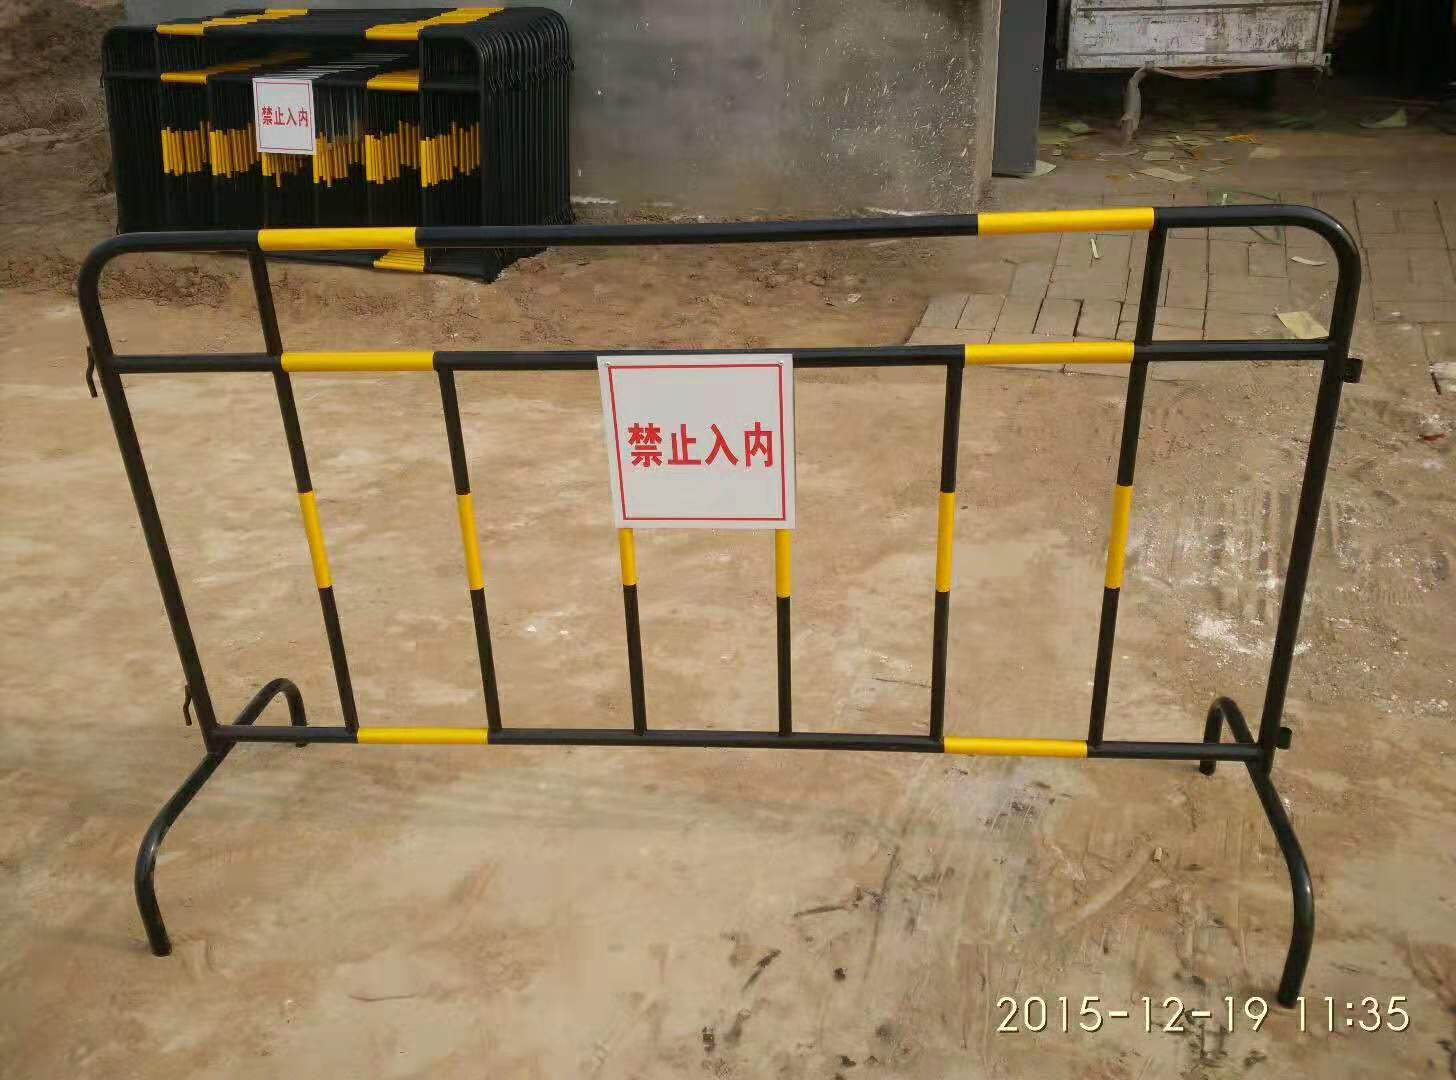 1.2*1.5米黄黑铁质安全围栏 组合式铁马隔离防护栏 临时遮拦